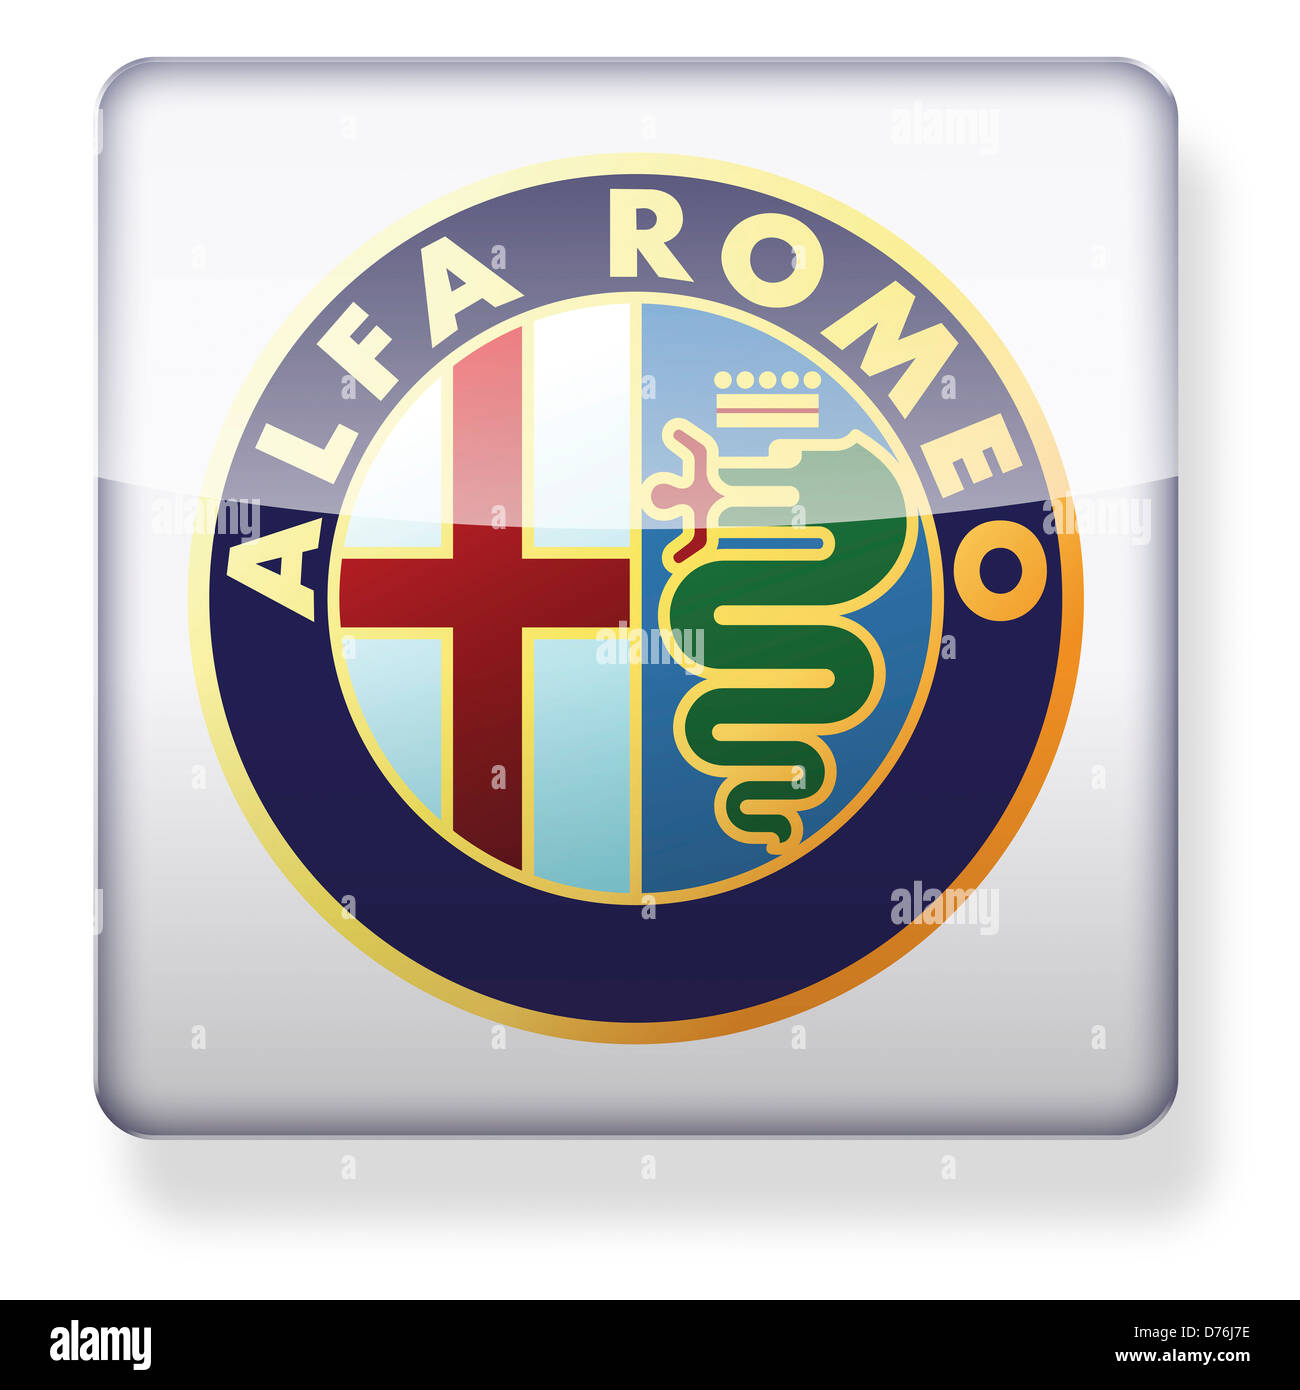 Logotipo de Alfa Romeo como el icono de una aplicación. Trazado de recorte incluido. Foto de stock